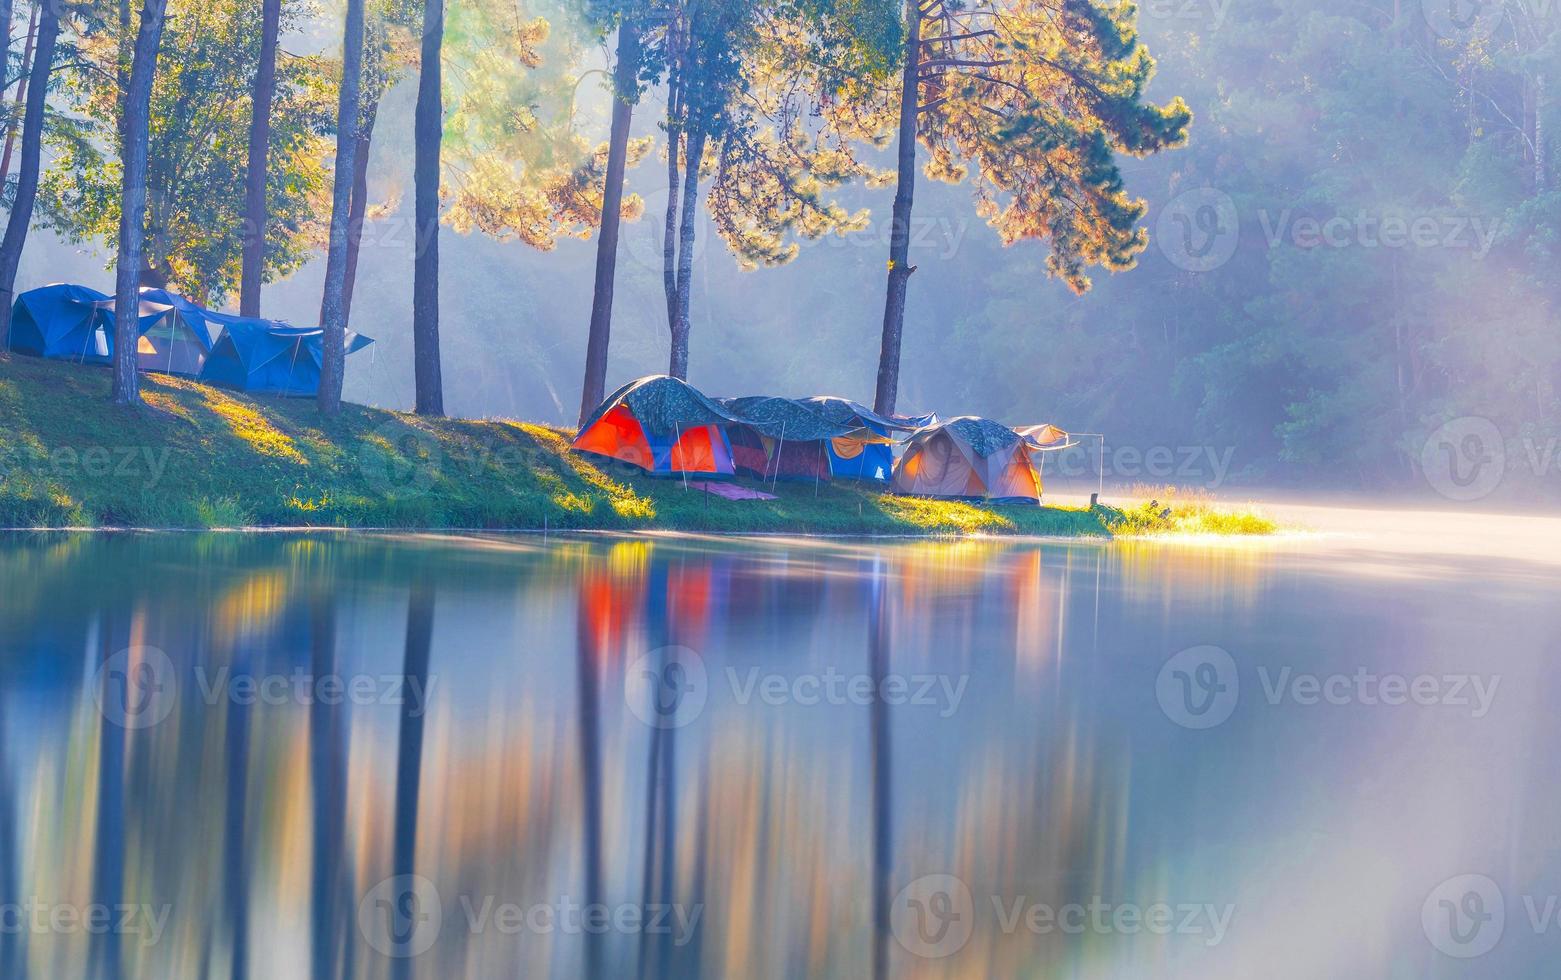 äventyr campingturism och tält under tallskogen med reflektion på vatten på morgonen vid pang-ung, mae hong son, thailand foto